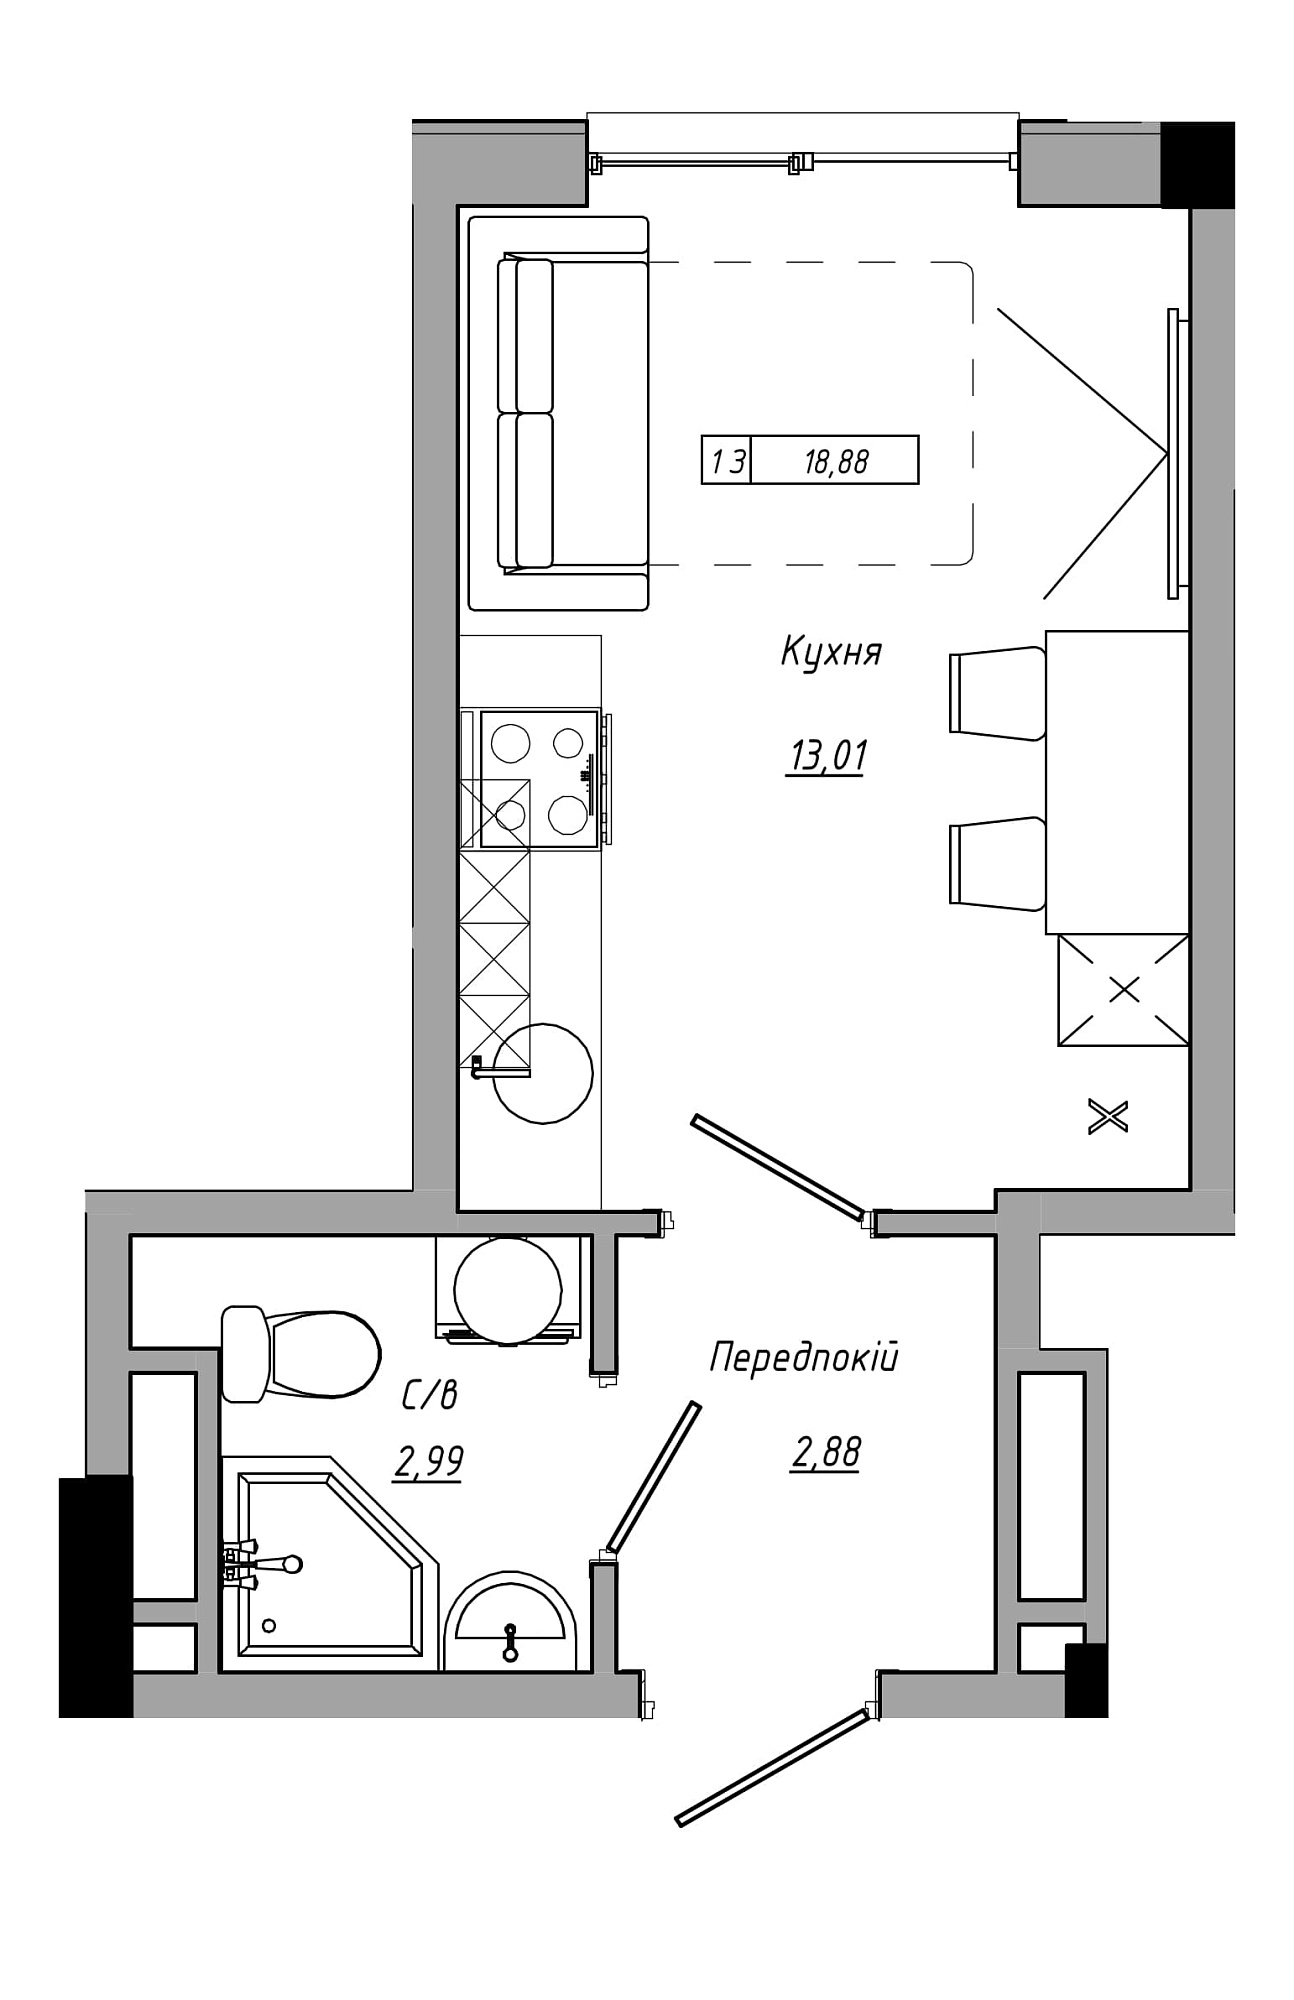 Планування Smart-квартира площею 18.88м2, AB-21-07/00011.